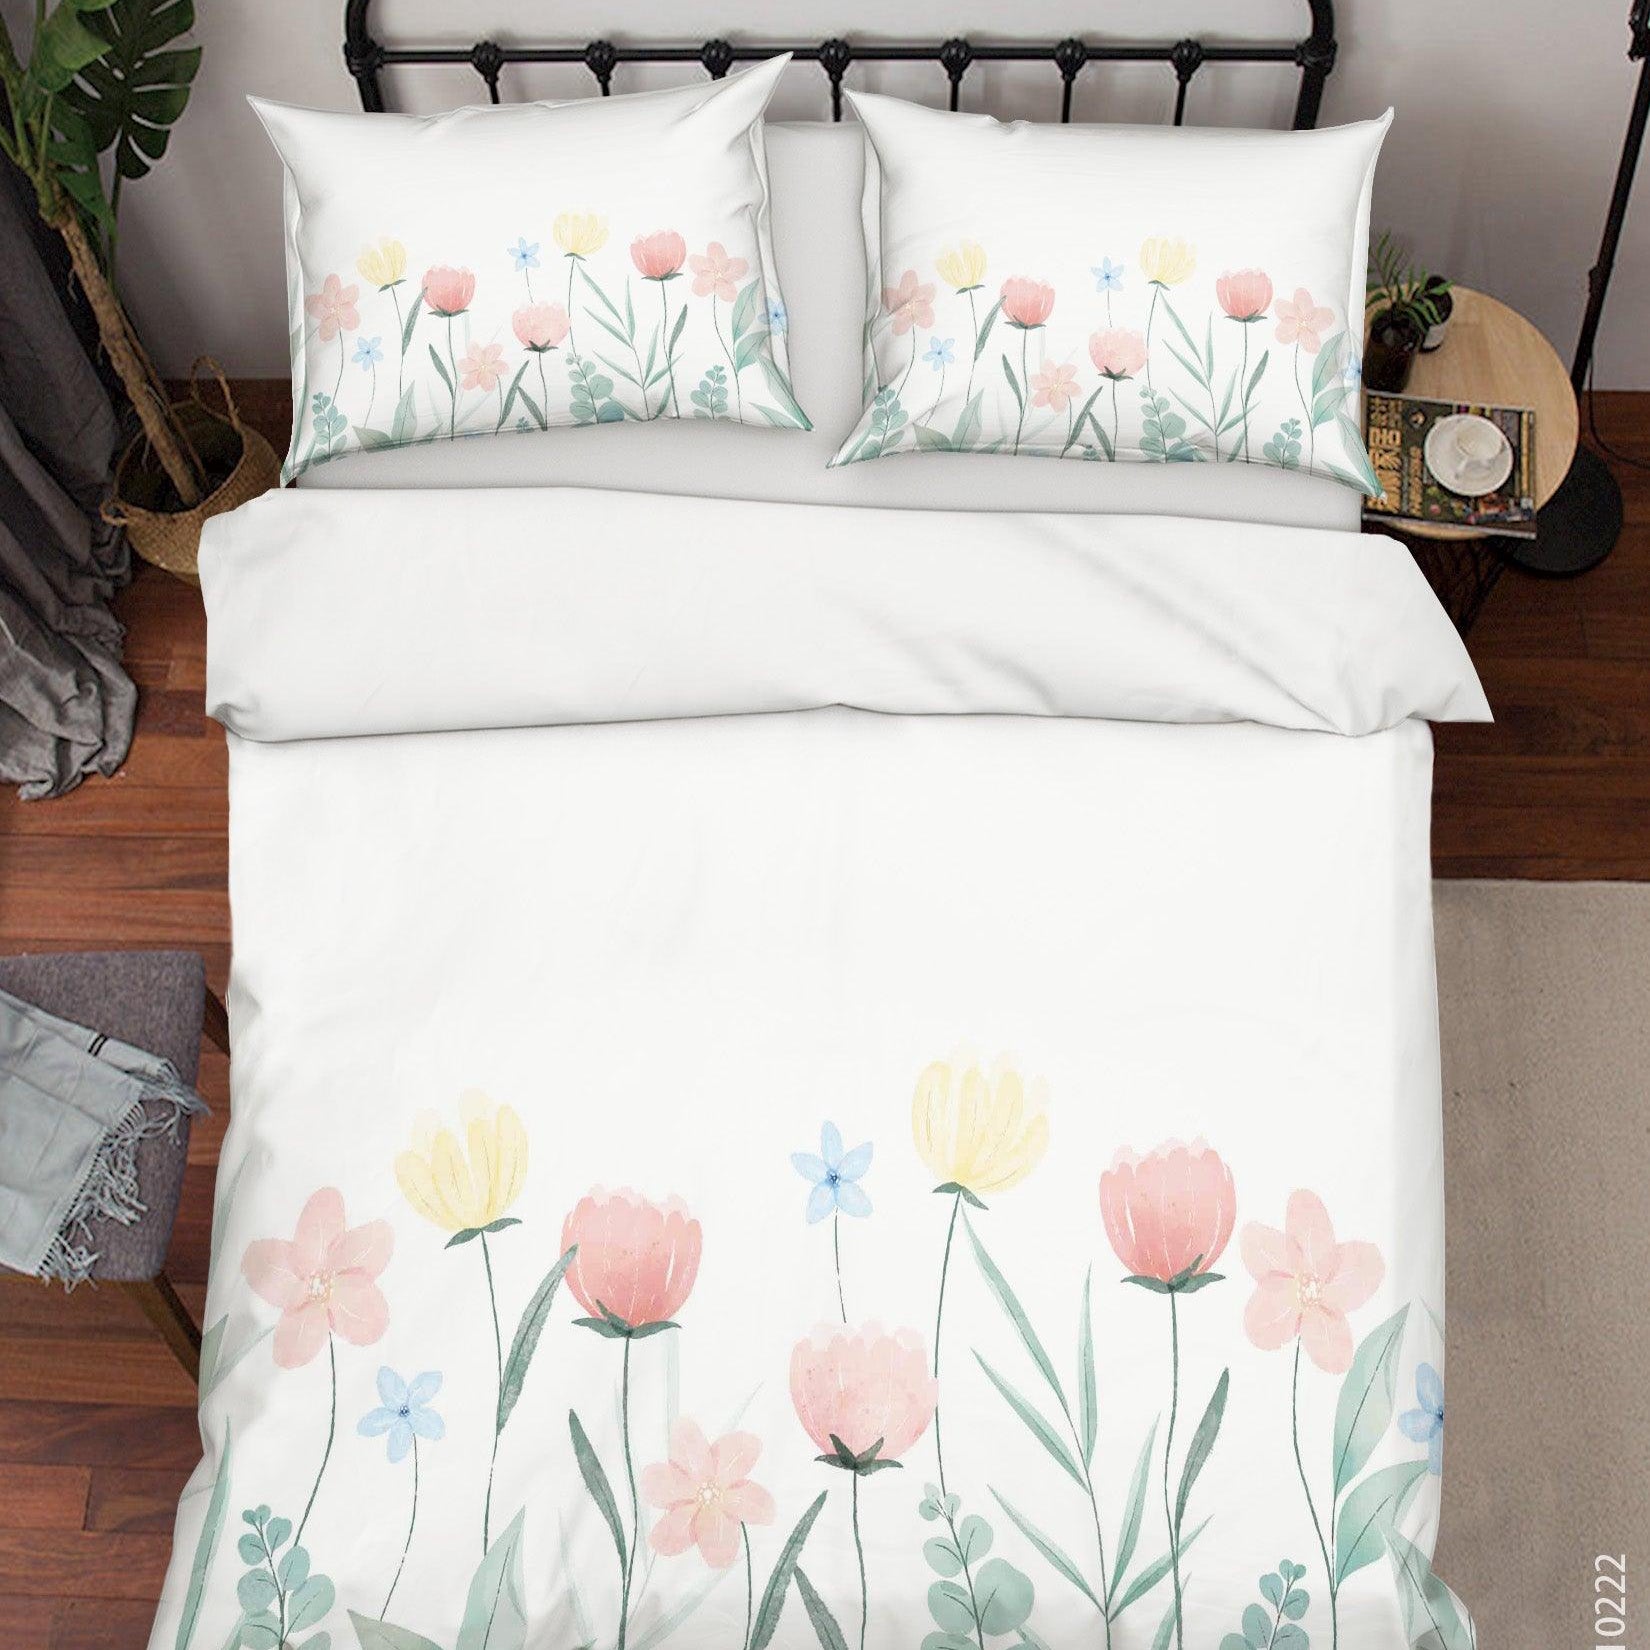 3D Watercolor Color Floral Quilt Cover Set Bedding Set Duvet Cover Pillowcases 155- Jess Art Decoration